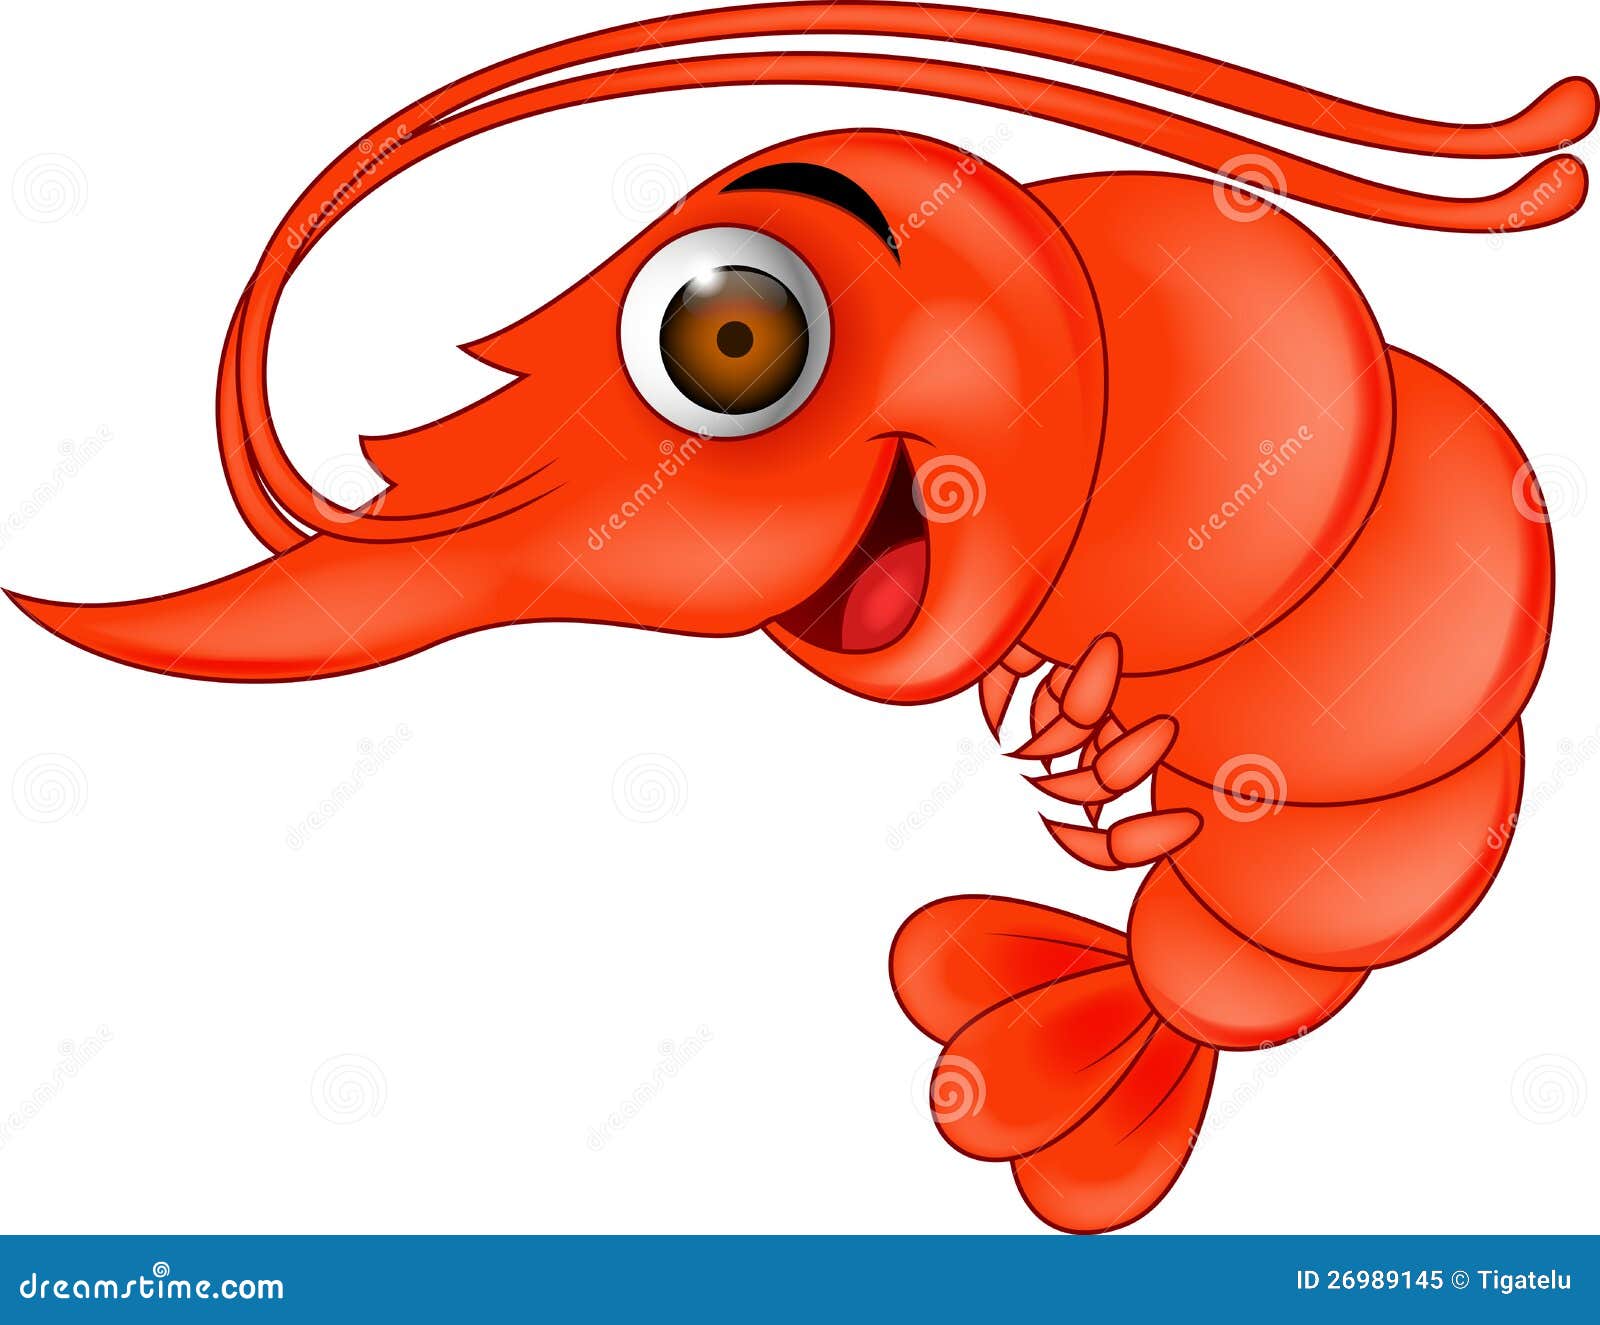 illustration de dessin animé de crevettes 26233505 Art vectoriel